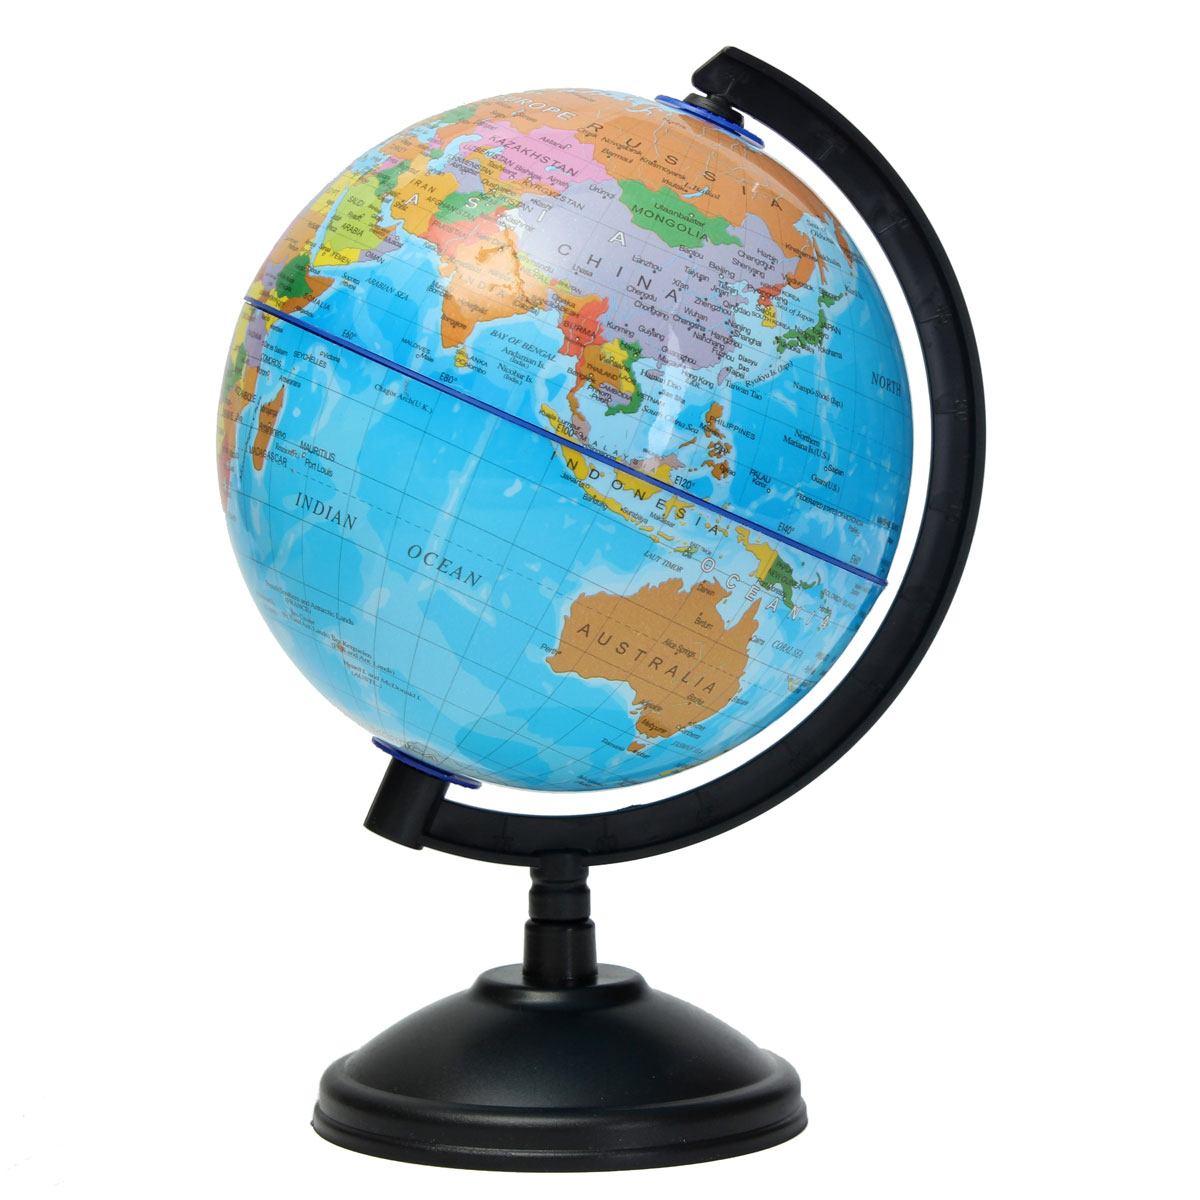 14cm carte du monde globe terrestre base geographie educatif enfant jouet cadeau